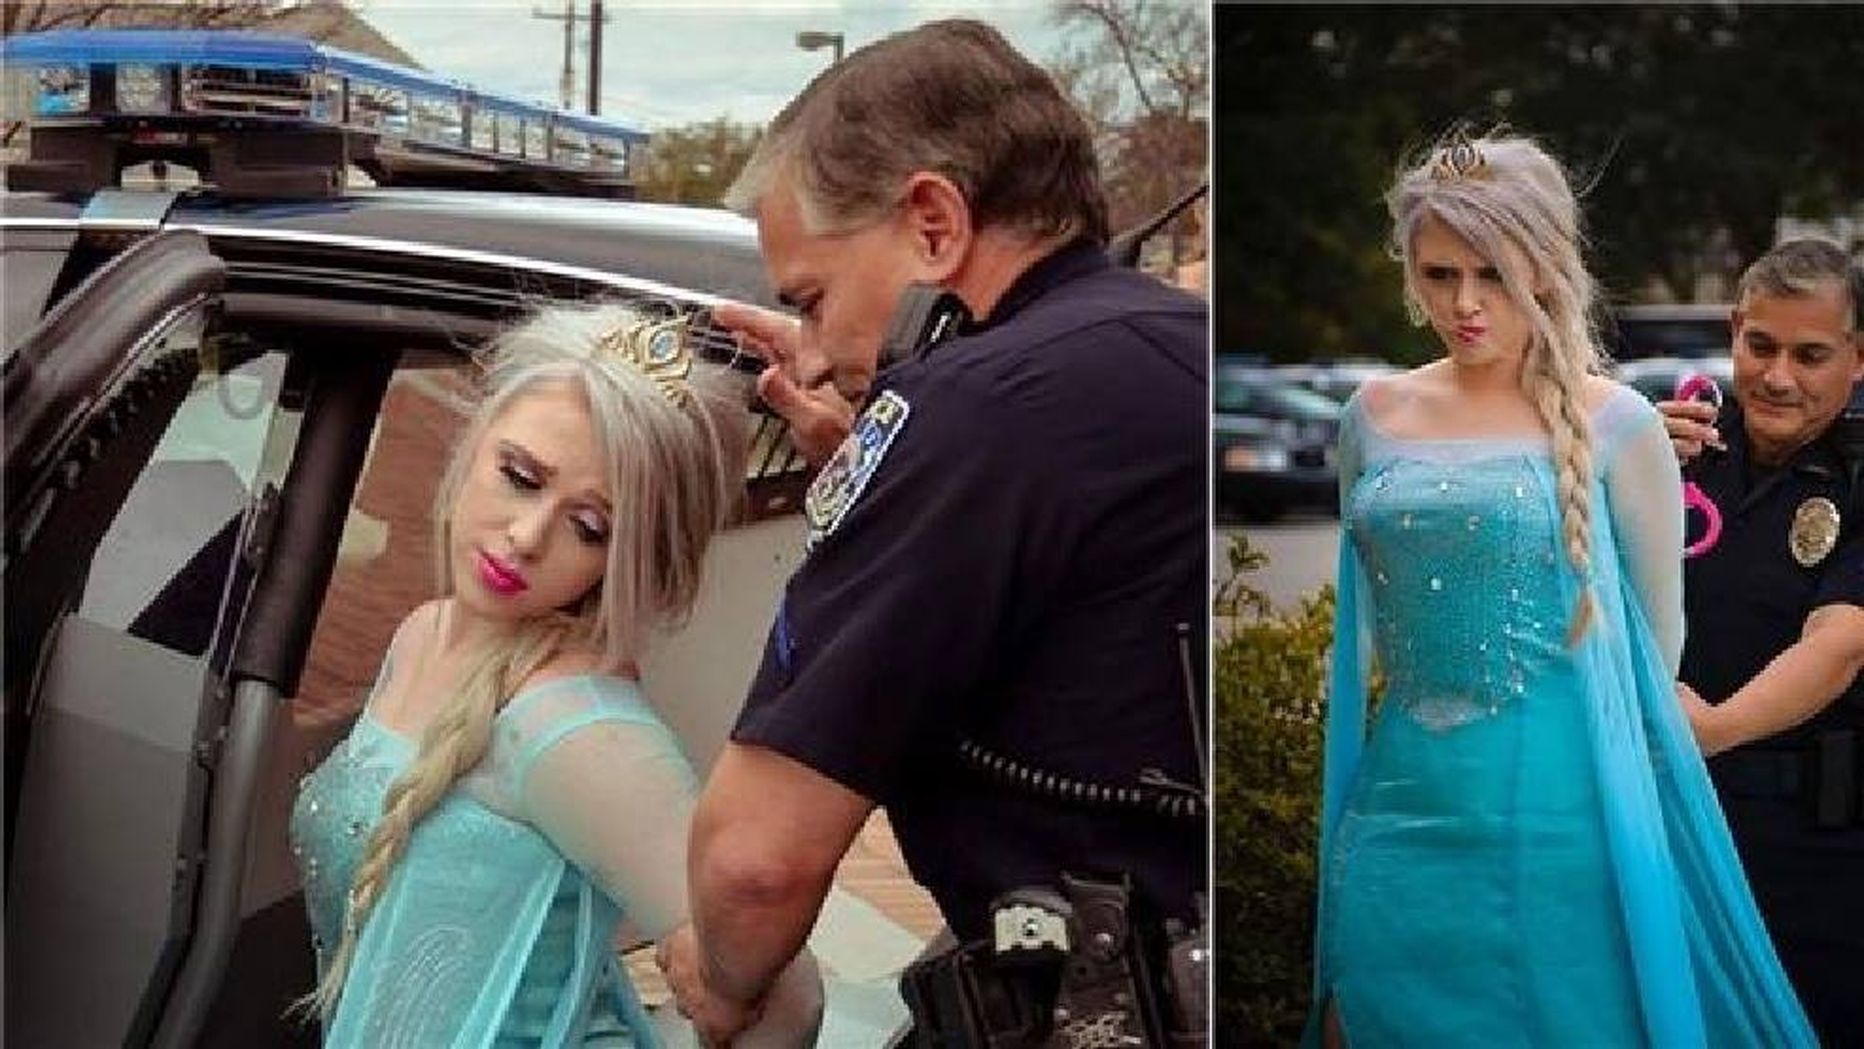 Illinoisi politsei «arreteeris» lumekuninganna Elsa